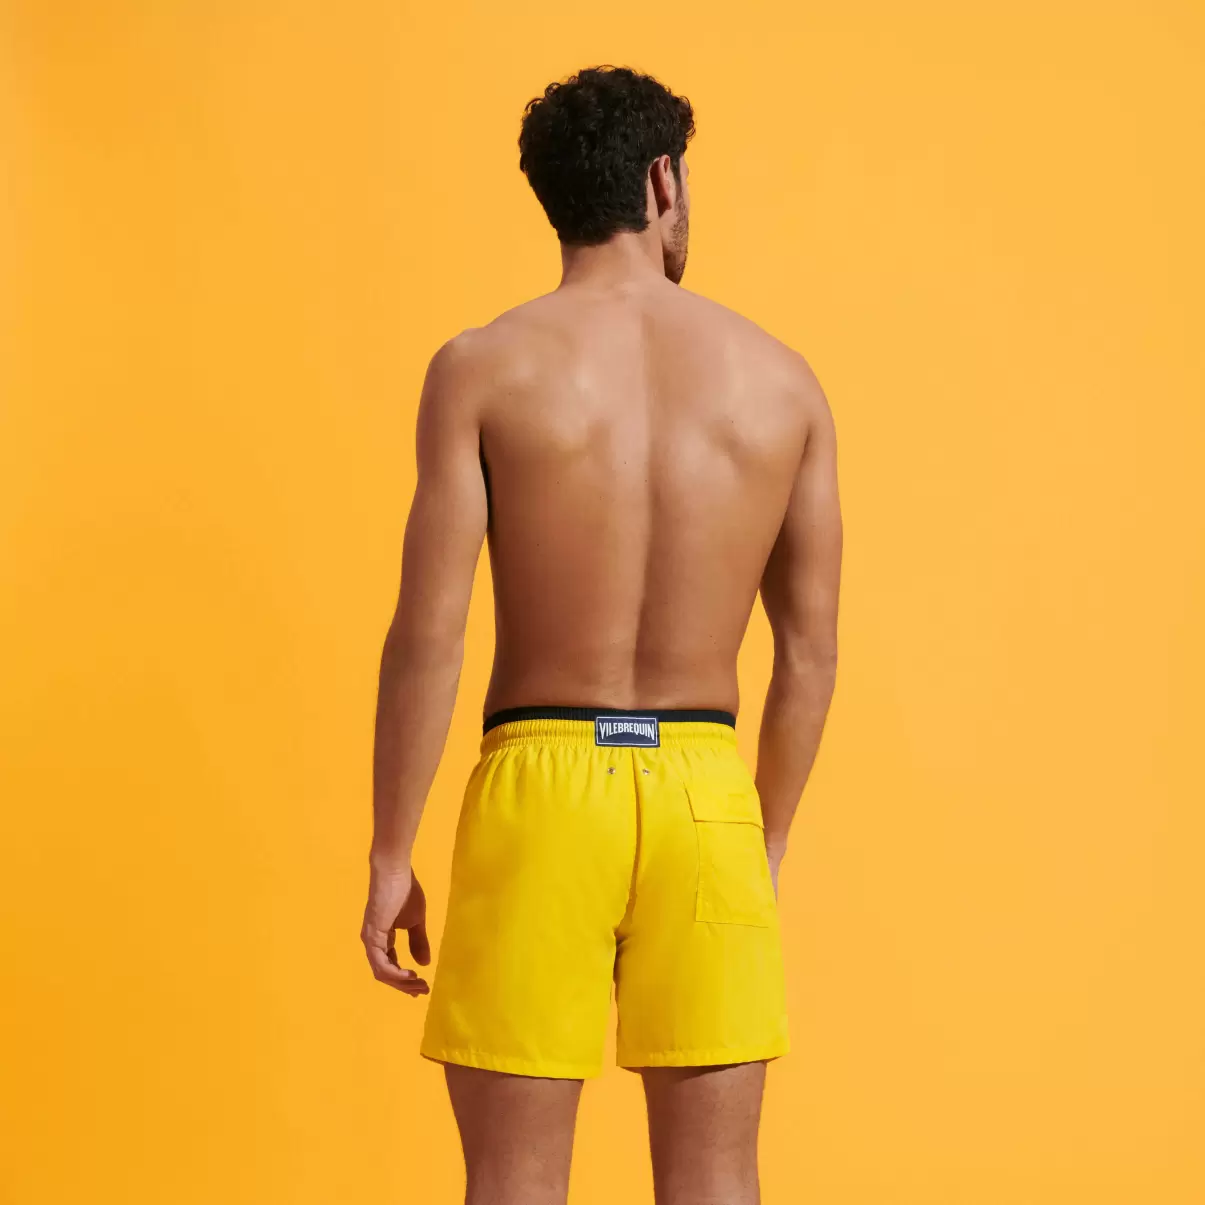 Herren Sonne / Gelb Zweifarbige Solid Bicolore Badeshorts Für Herren Der Klassiker Moorea Marke Vilebrequin - 1